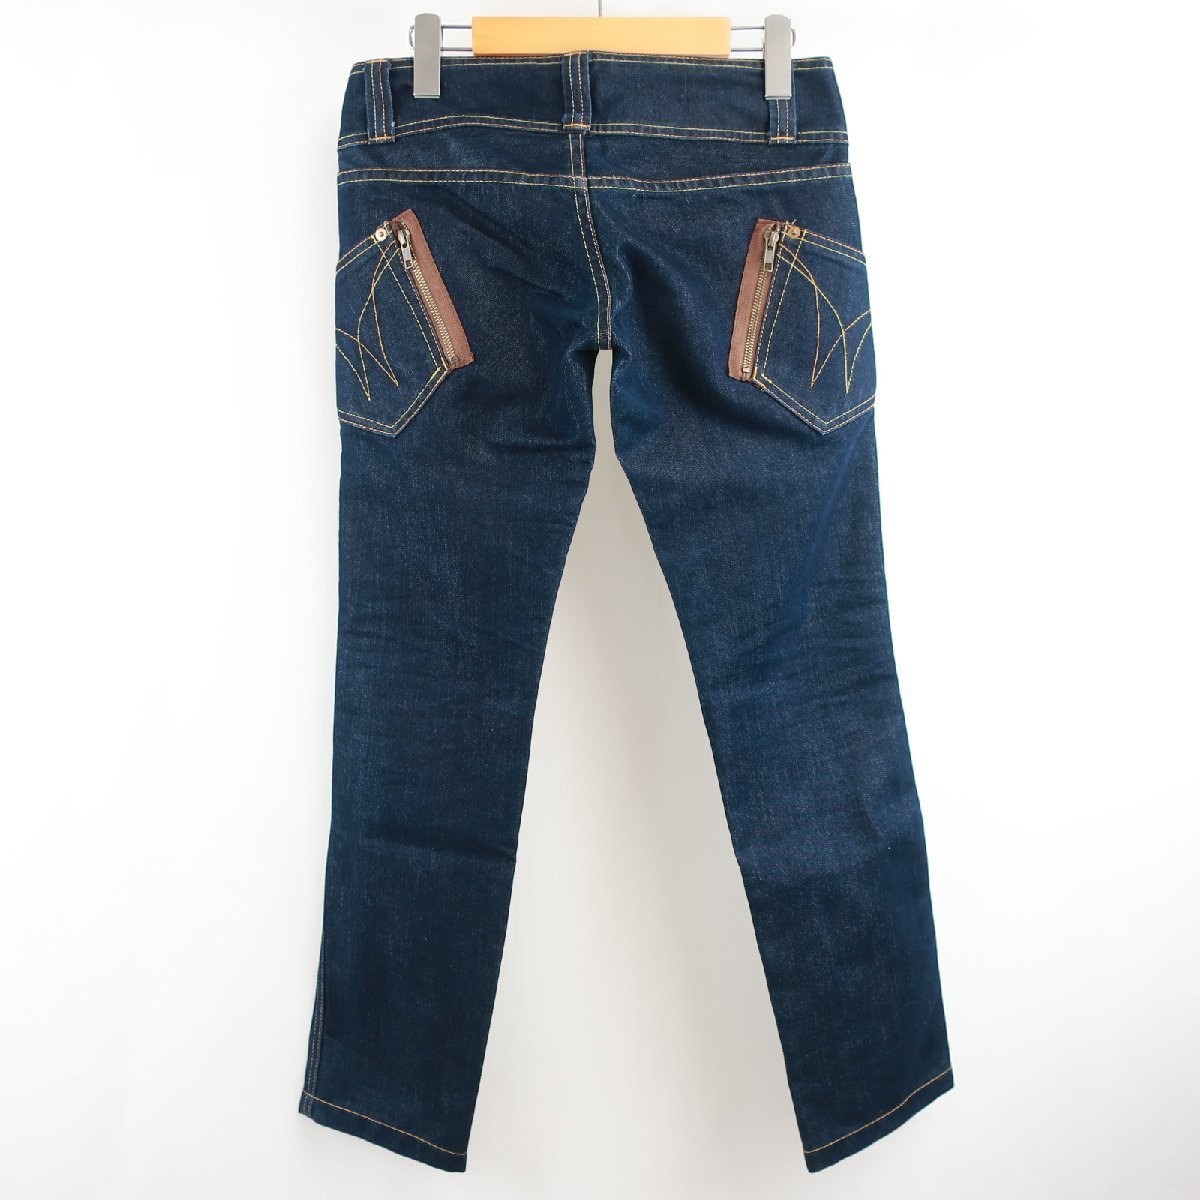 SMORK затонированный особый обработка Zip карман дизайн стежок Denim брюки сделано в Японии 38 темно-синий темно-синий женский KB1703-30